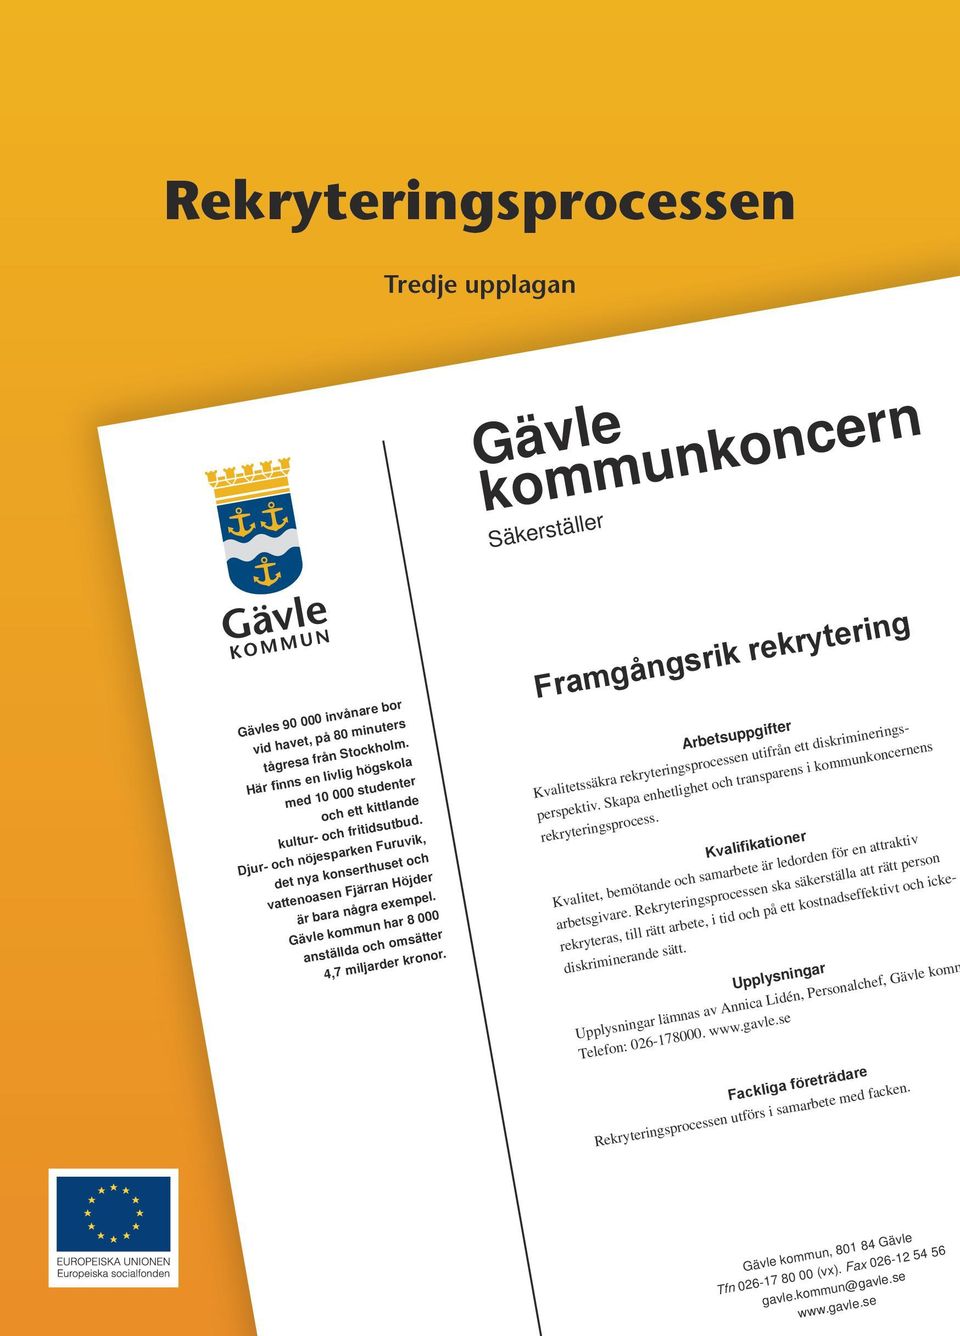 Gävle kommun har 8 000 anställda och omsätter 4,7 miljarder kronor. Framgångsrik rekrytering Arbetsuppgifter Kvalitetssäkra rekryteringsprocessen utifrån ett diskrimineringsperspektiv.